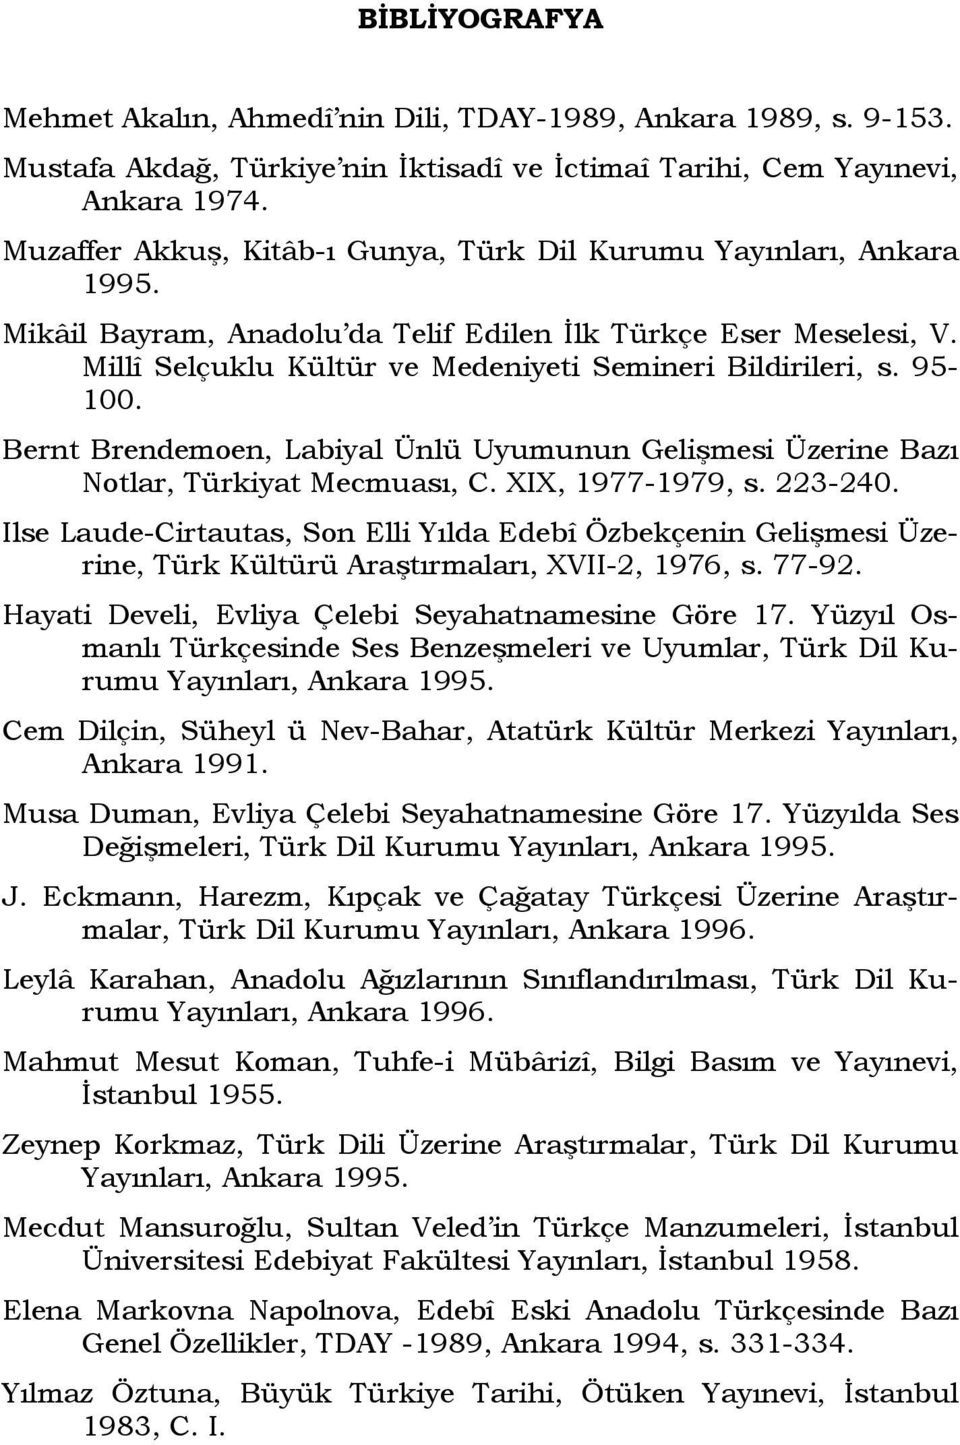 95-100. Bernt Brendemoen, Labiyal Ünlü Uyumunun Gelişmesi Üzerine Bazı Notlar, Türkiyat Mecmuası, C. XIX, 1977-1979, s. 223-240.